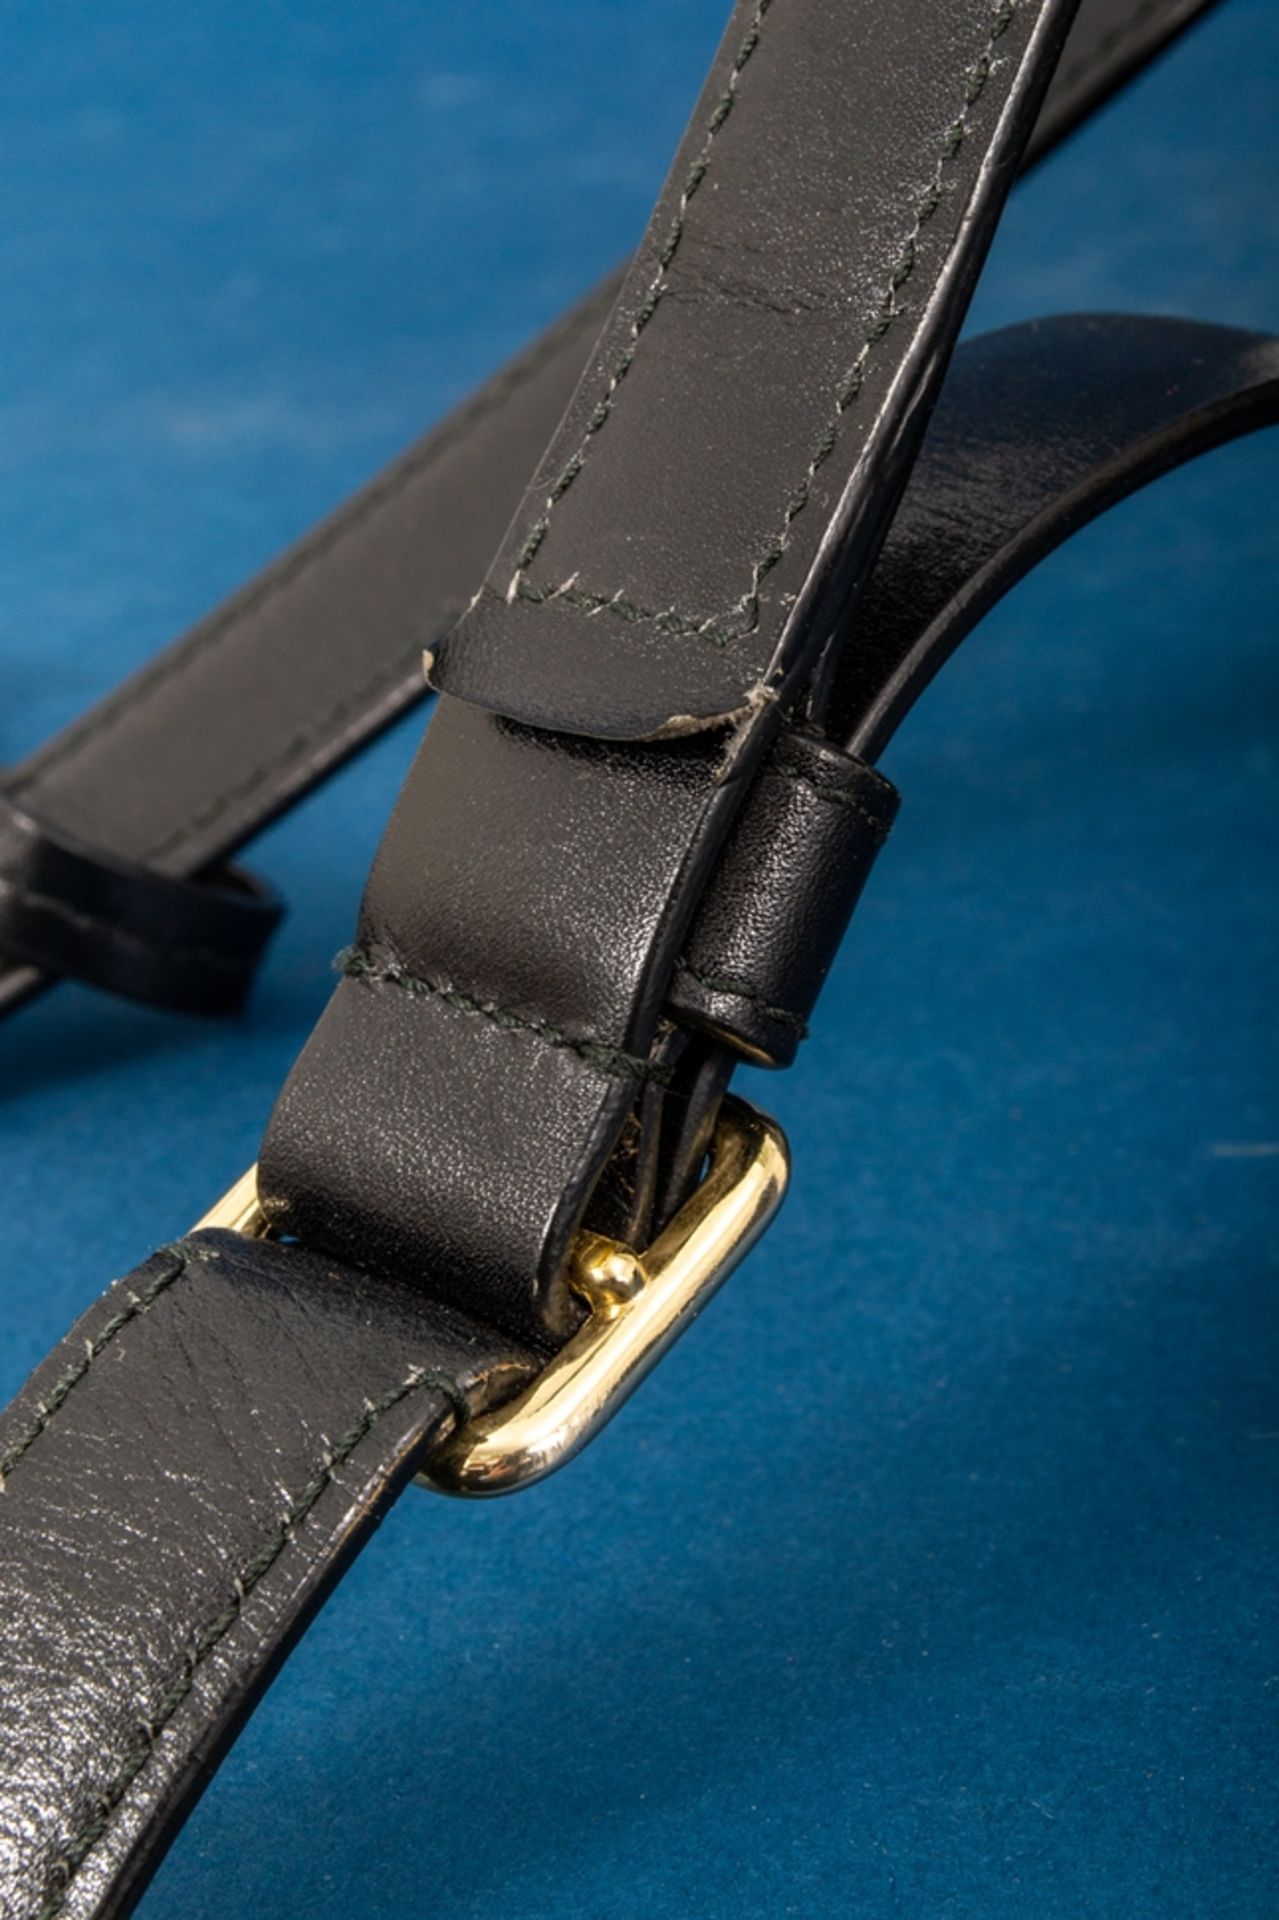 JIL SANDER - Damenhandtasche/Umhängetasche, schwarzes Leder mit polierten Messing-Beschlägen/ - Bild 7 aus 9